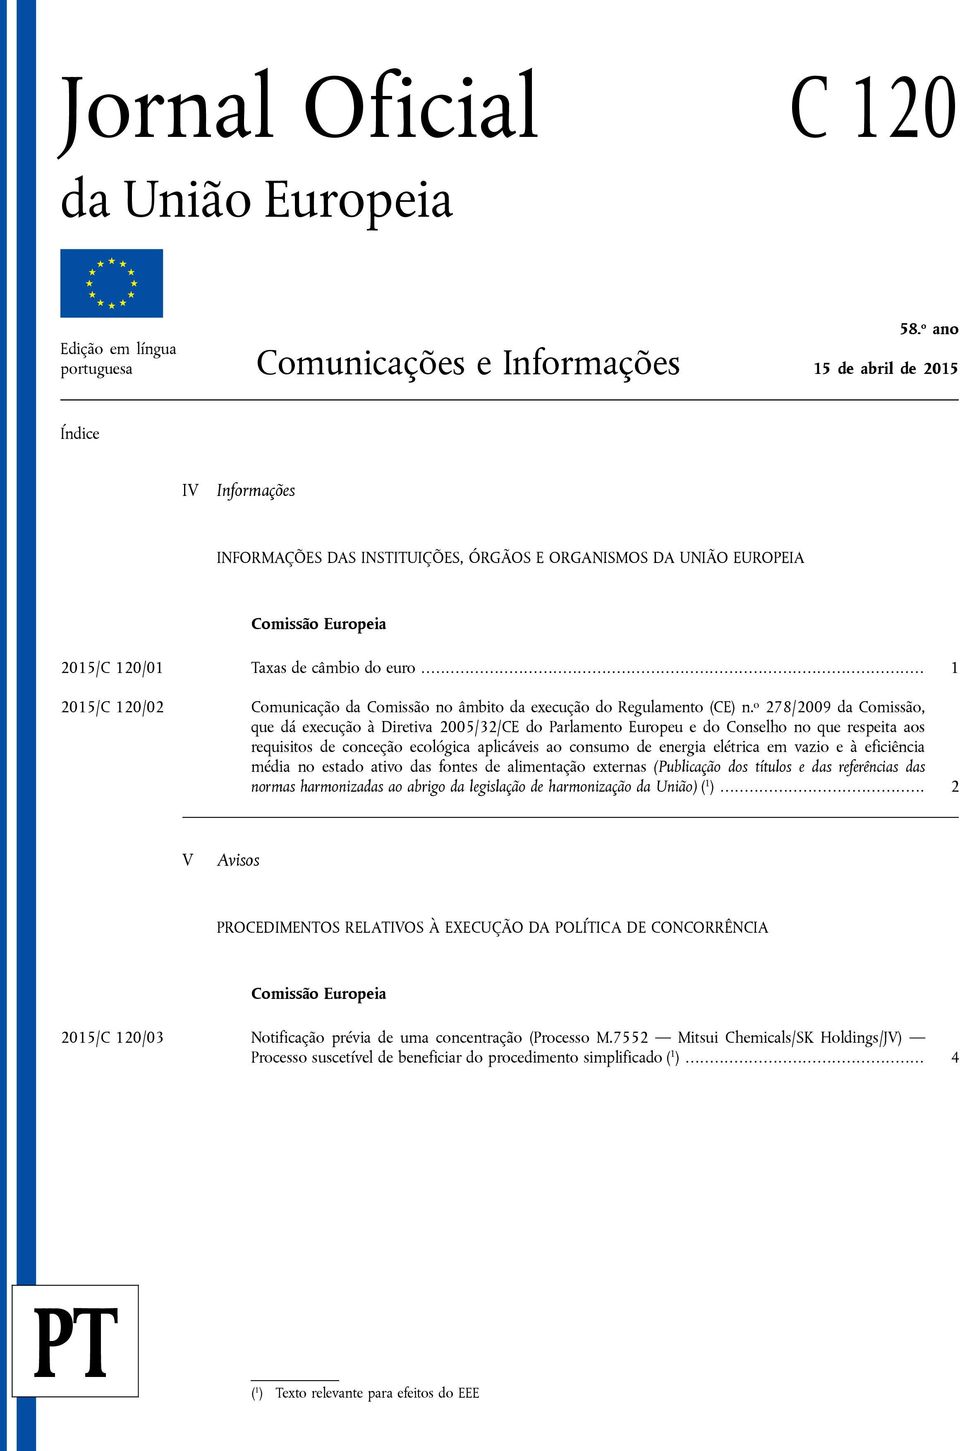 120/01 Taxas de câmbio do euro... 1 2015/C 120/02 Comunicação da Comissão no âmbito da execução do Regulamento (CE) n.